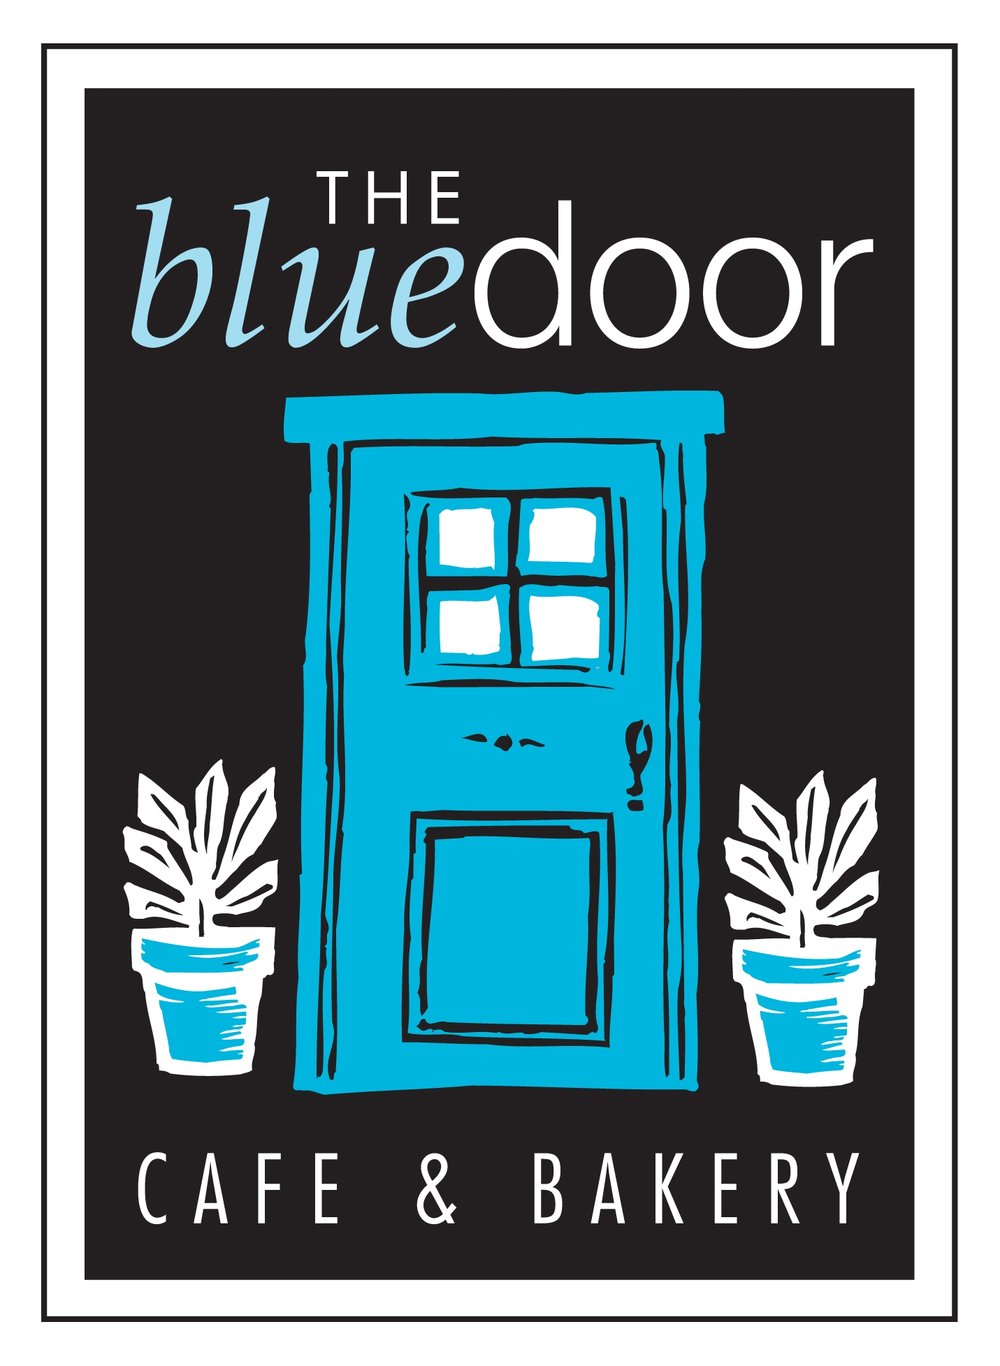 The Blue Door Cafe & Bakery